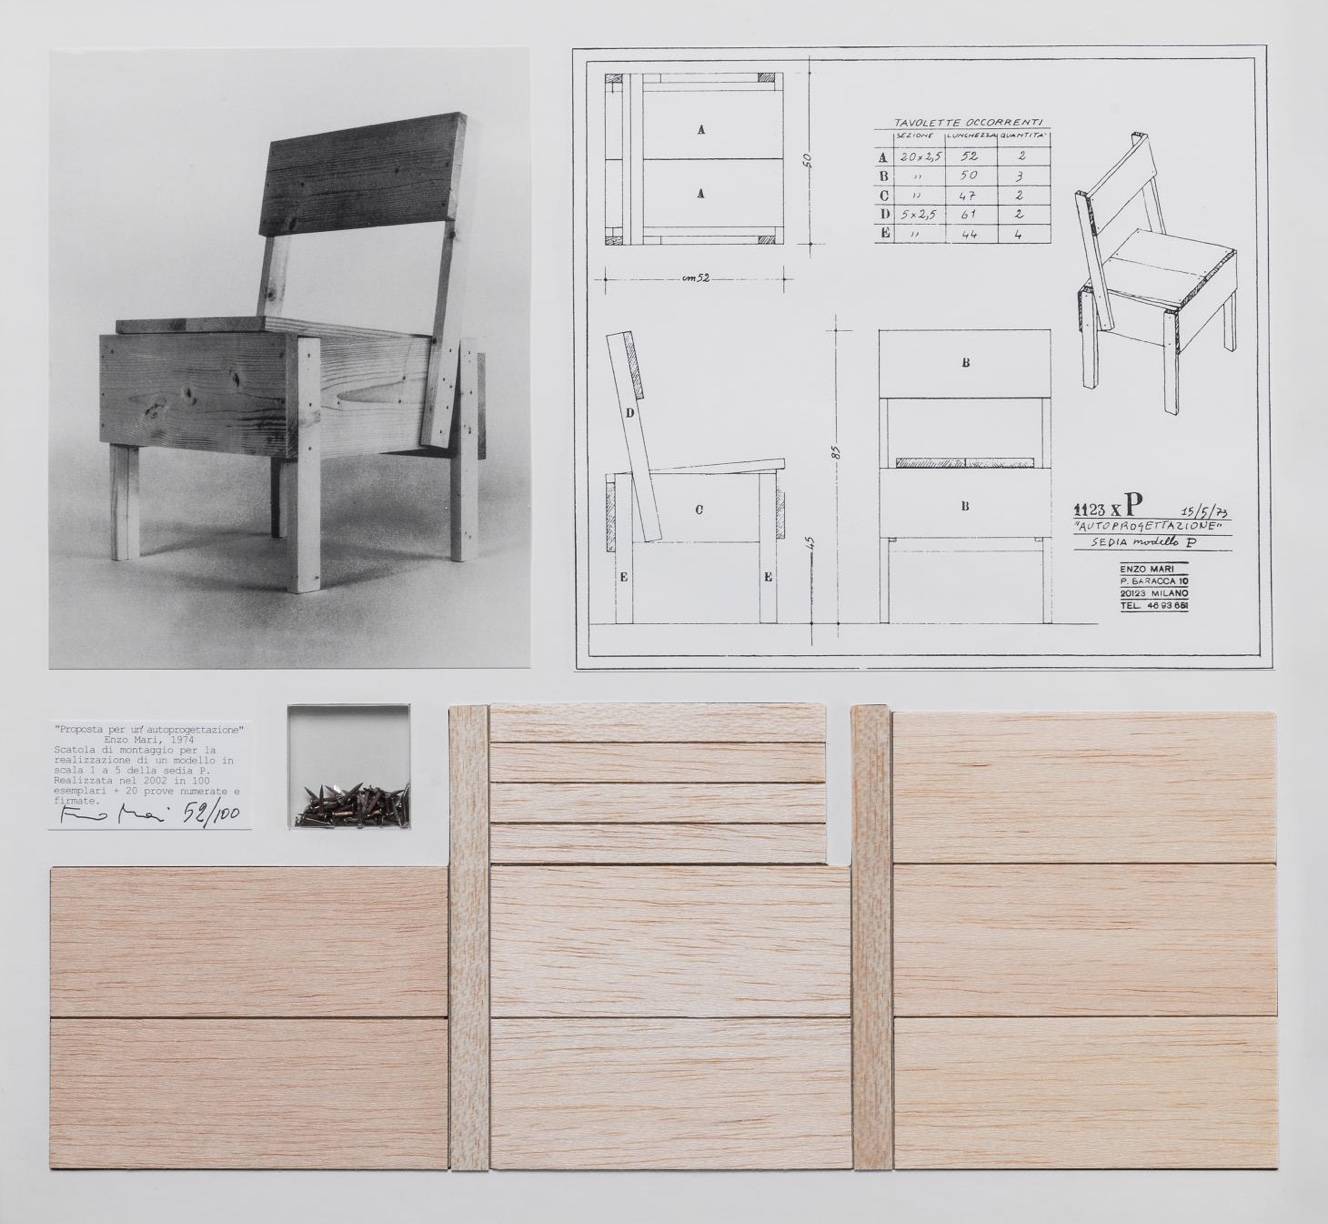 Enzo Mari Furniture Design: Simple Materials & Function